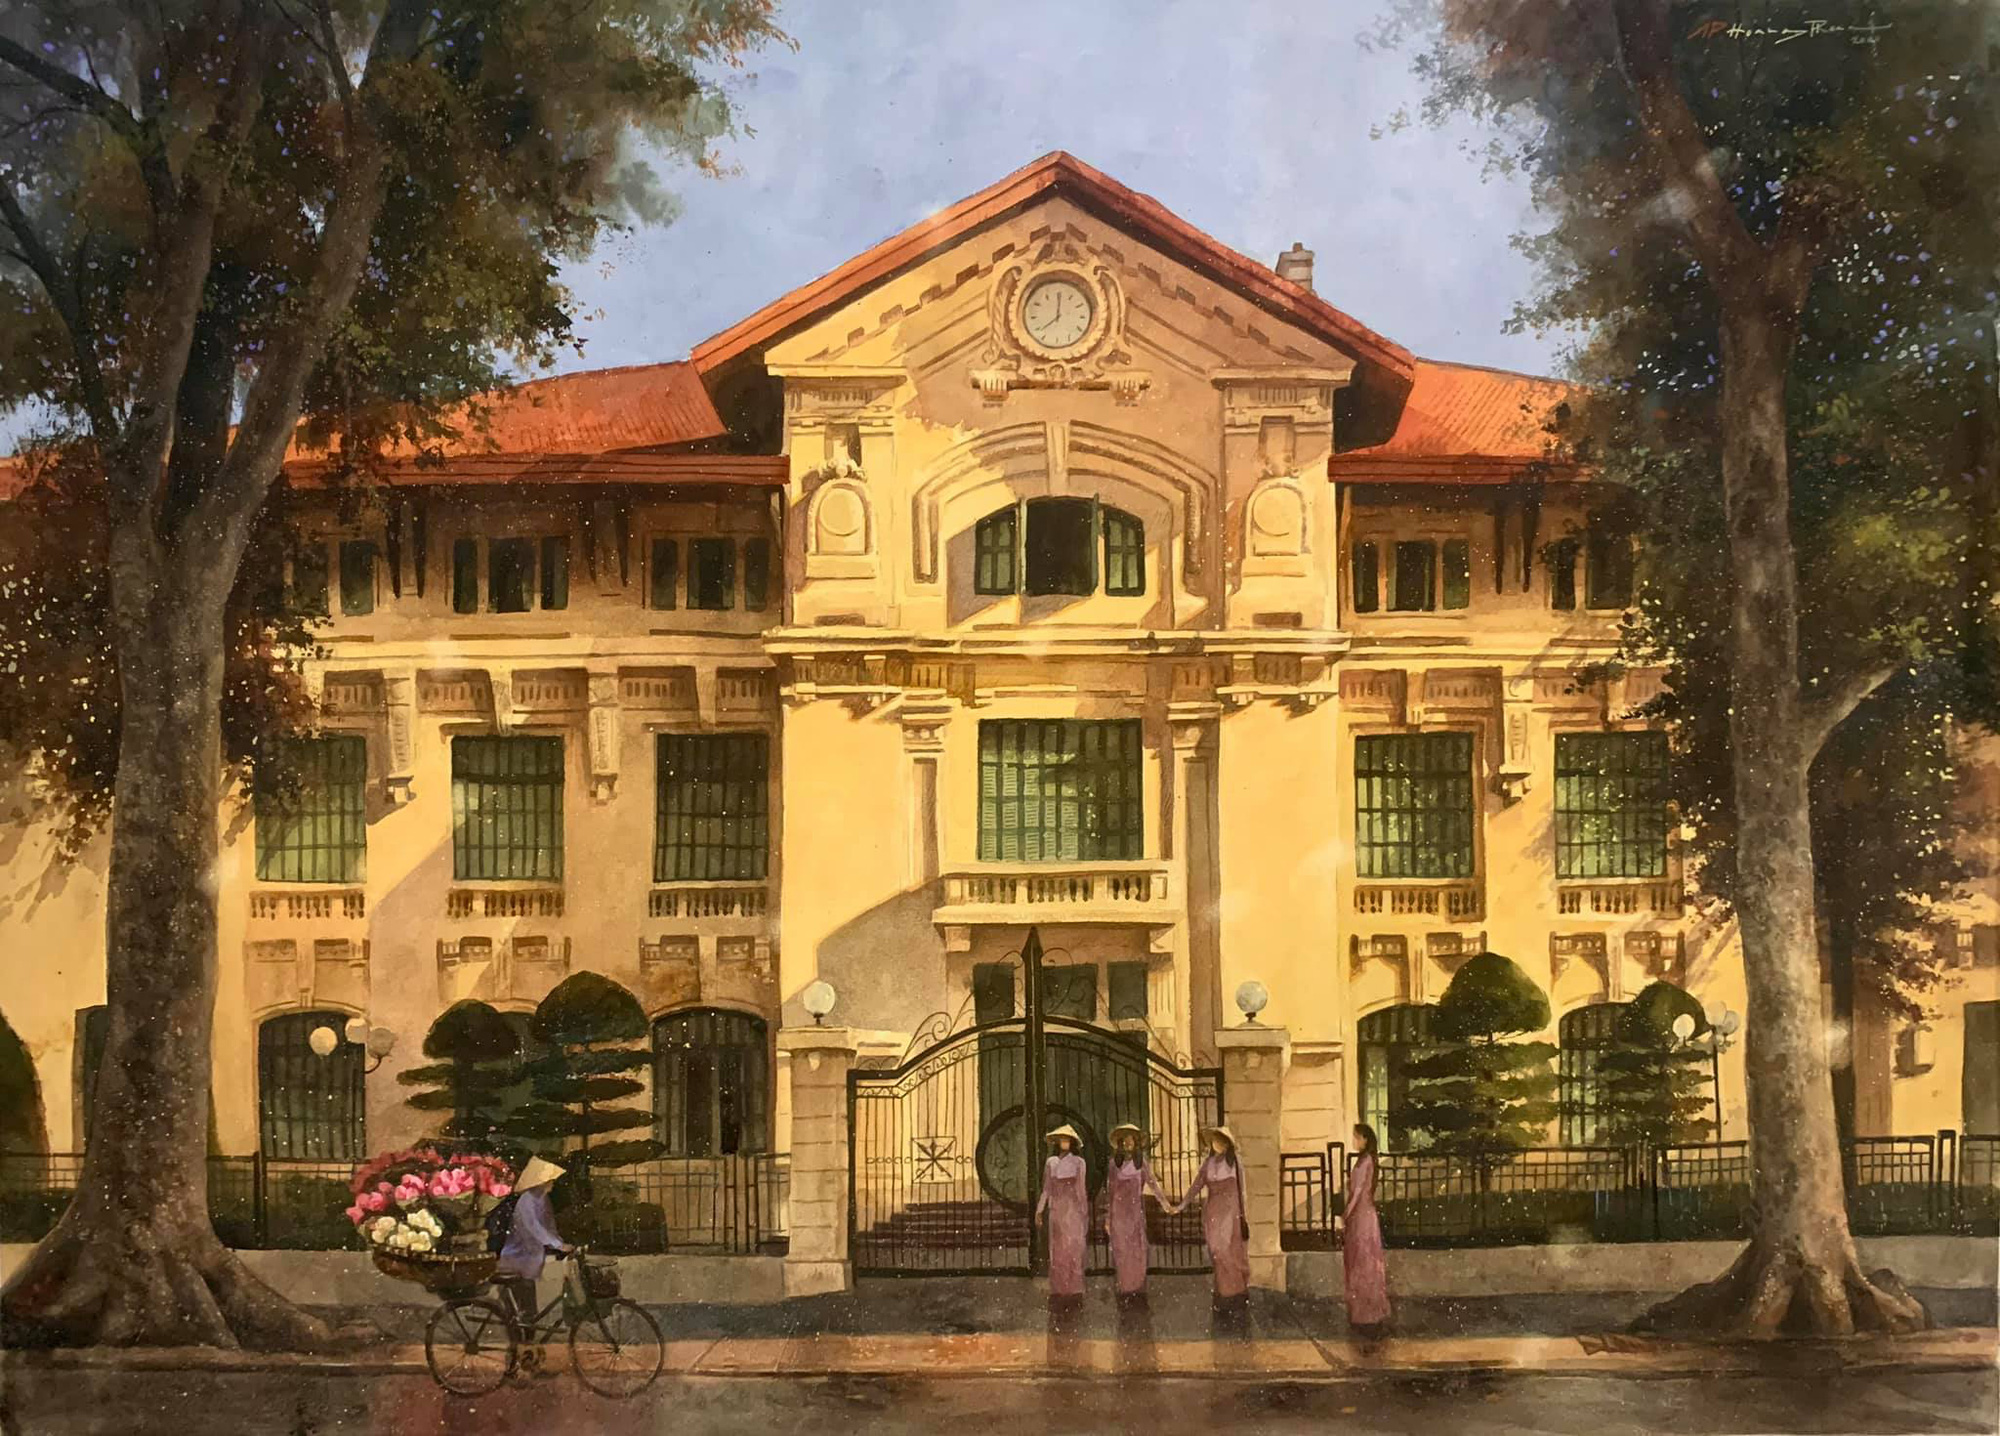 Bộ tranh Hà Nội có sức lan toả nhất lúc này: Một thủ đô đẹp thổn thức qua góc nhìn của người con Sài Gòn - Ảnh 3.